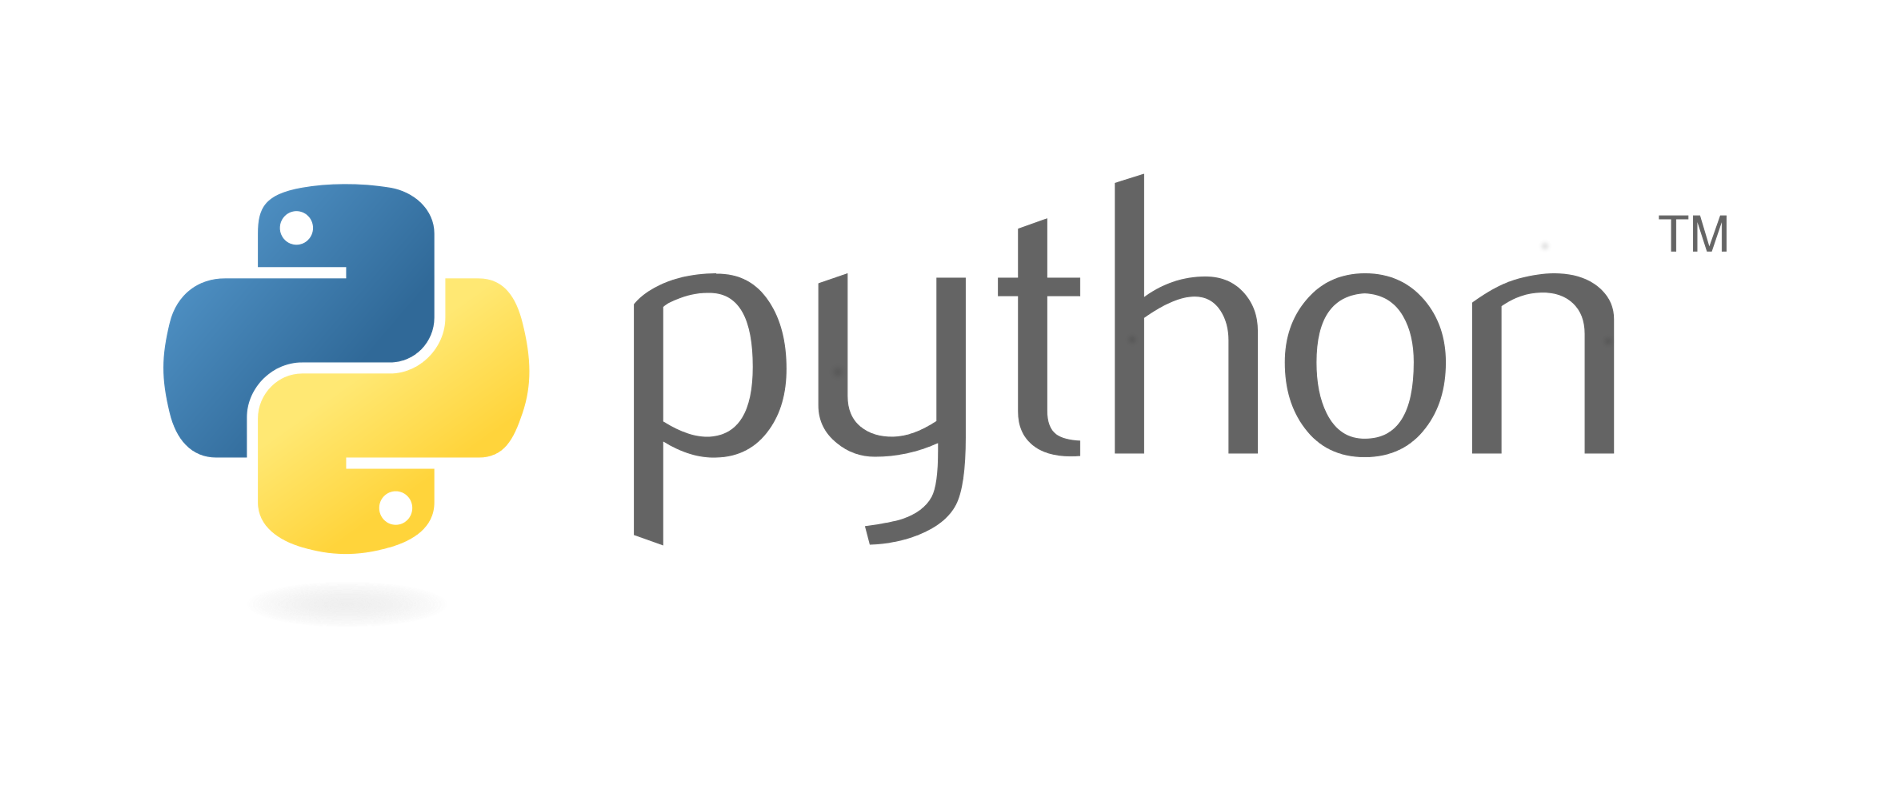 บทเรียน Python ฟรี จาก Microsoft